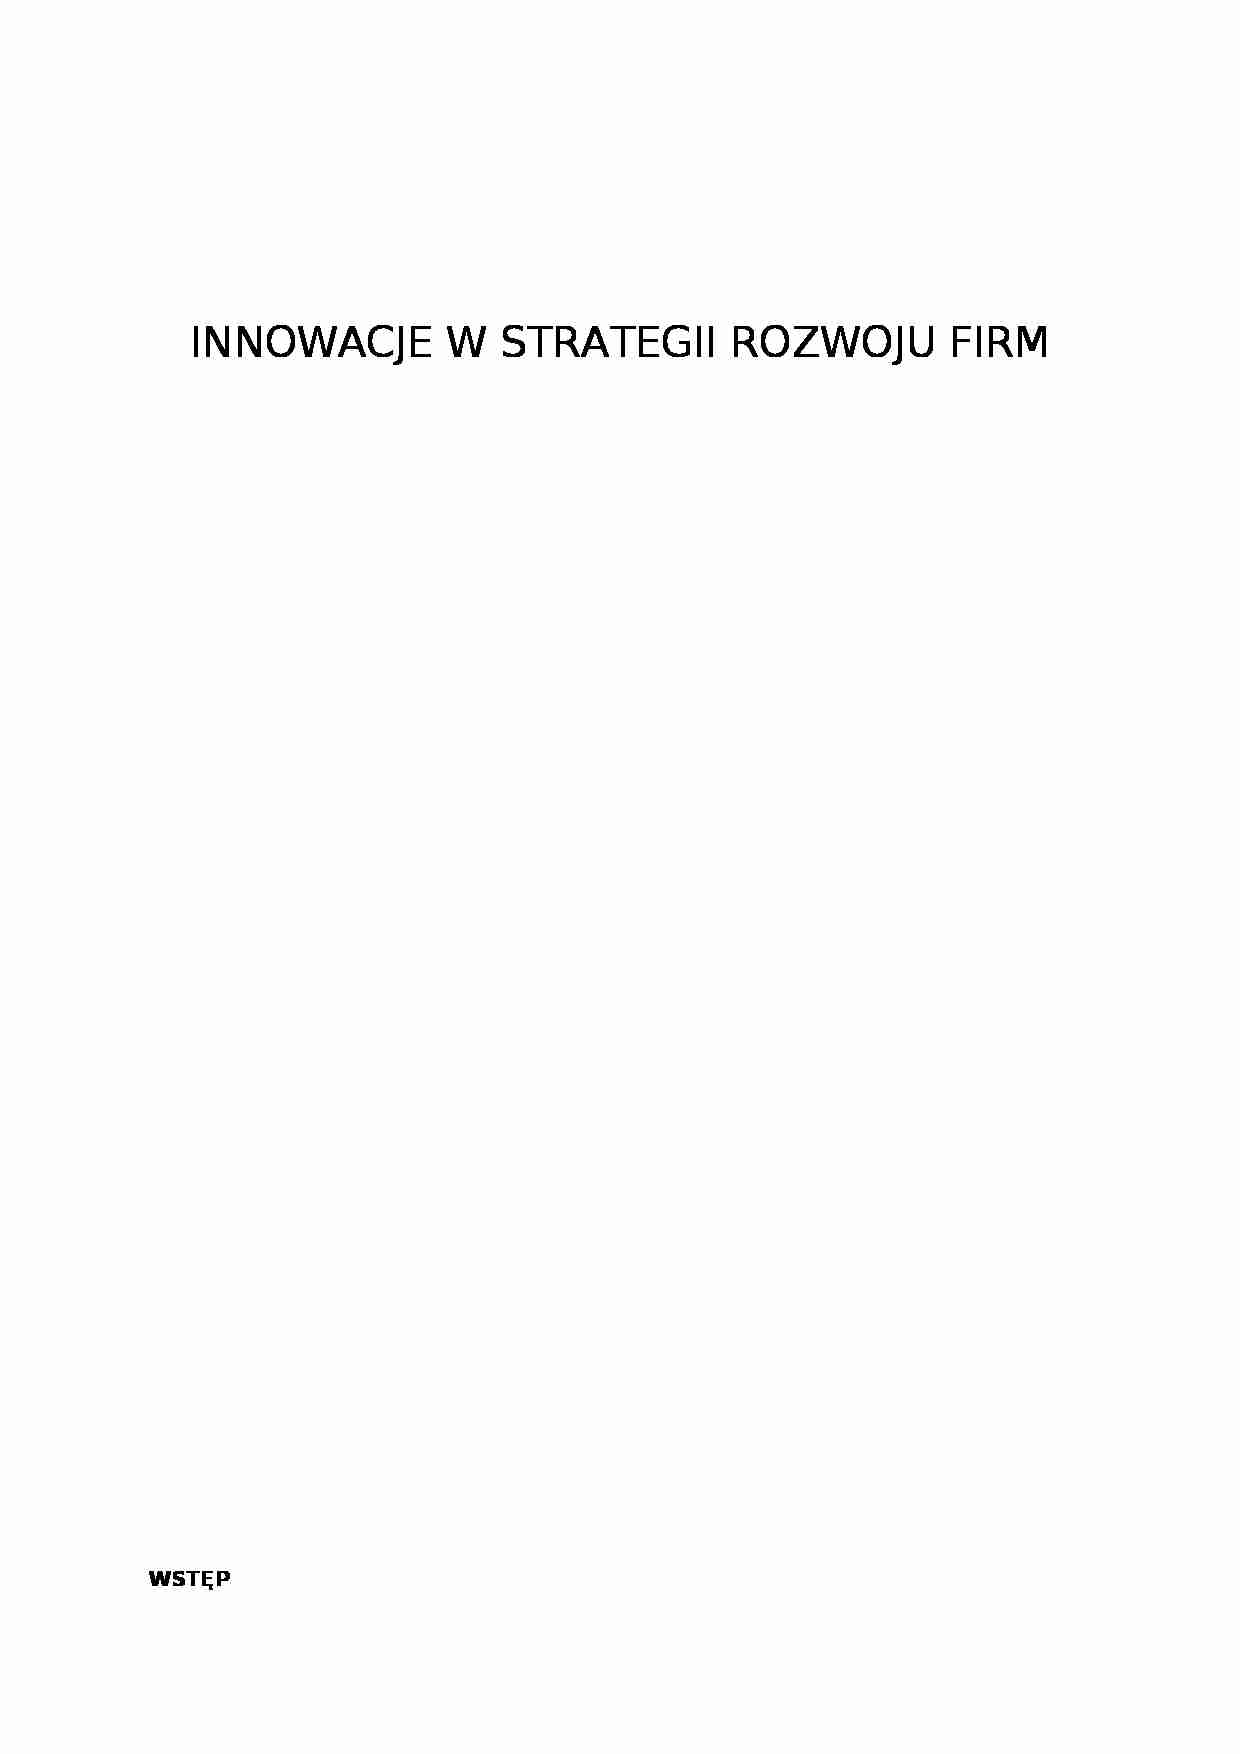 Innowacje w strategii rozwoju firm - strona 1